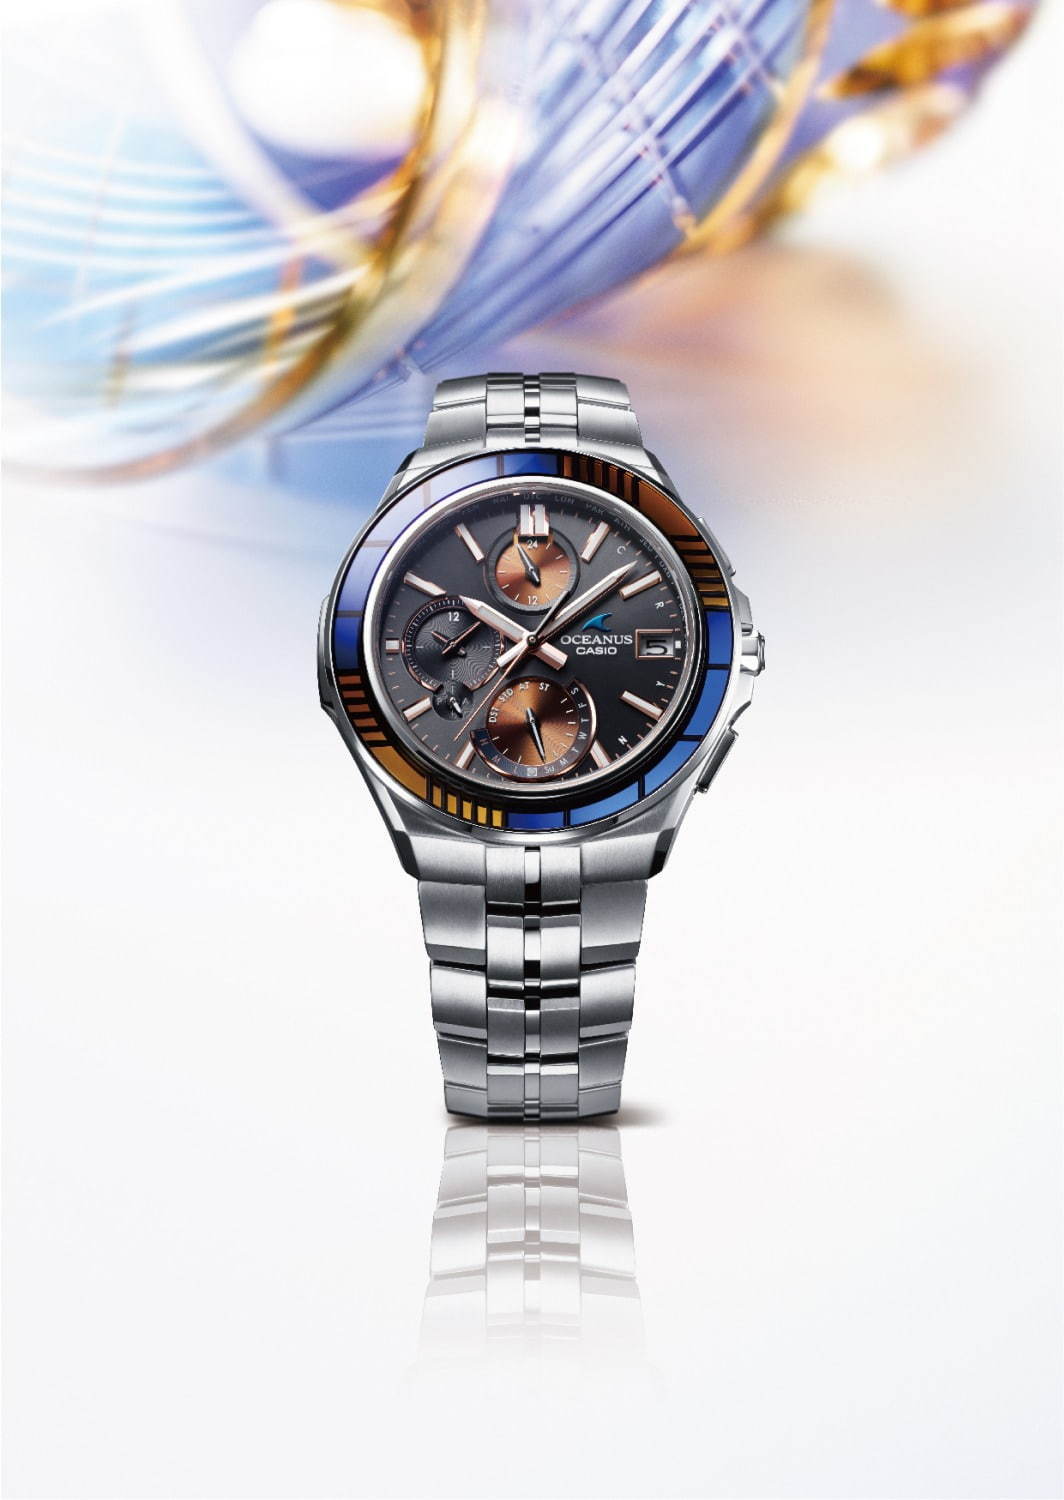 カシオのメンズ腕時計 オシアナス 新作 青 琥珀の江戸切子をベゼルに ファッションプレス